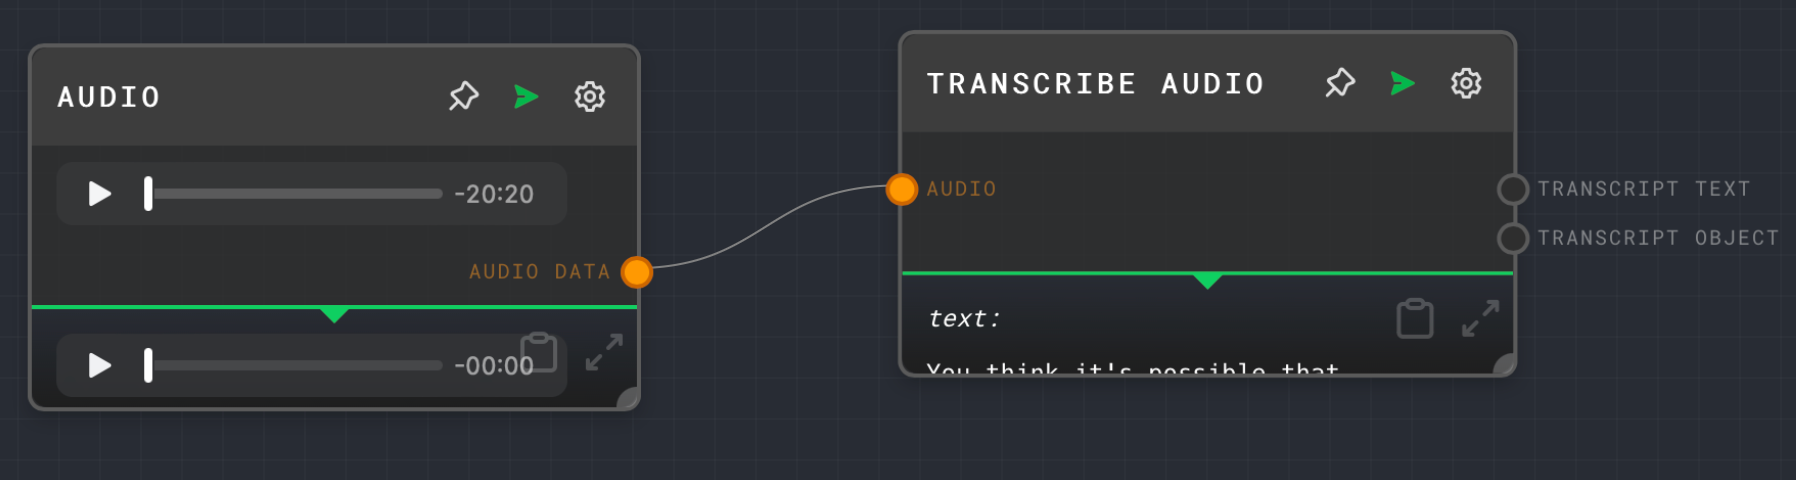 6-configure-transcribe-node